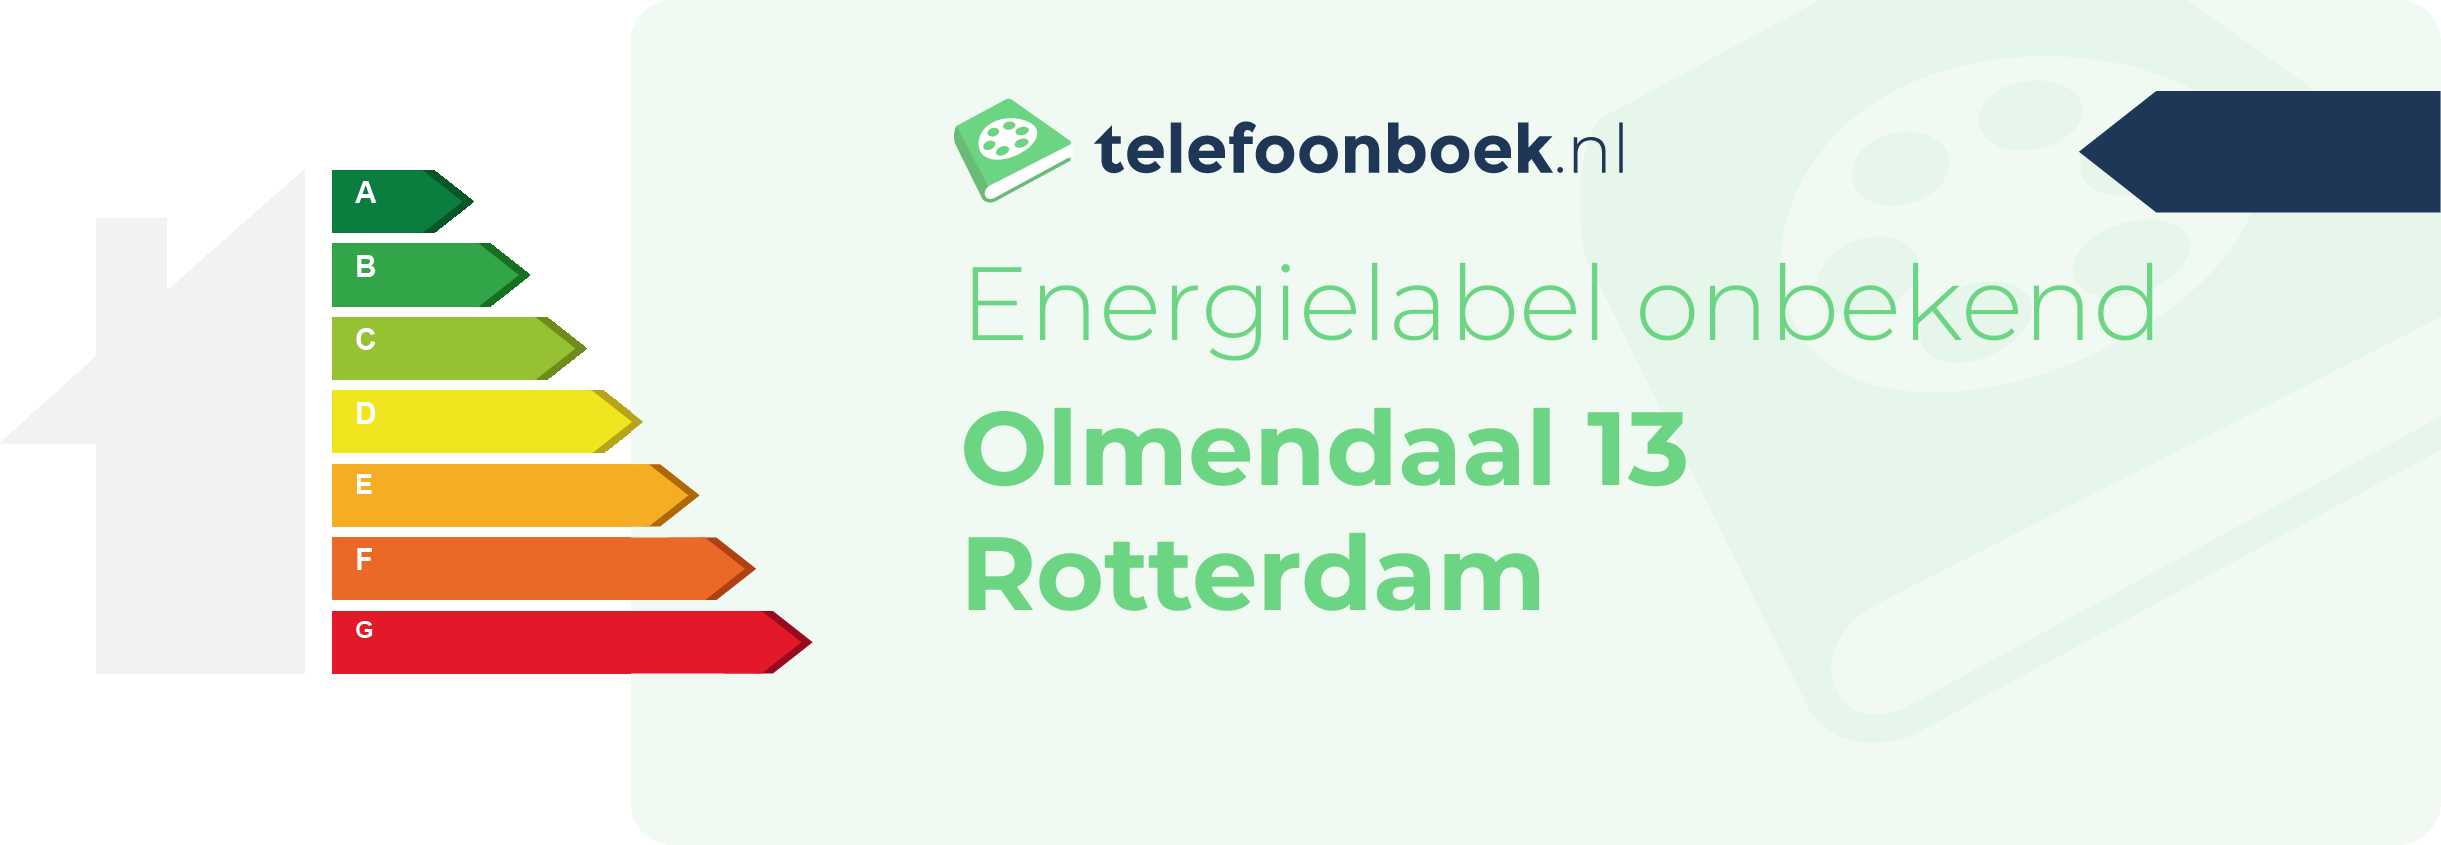 Energielabel Olmendaal 13 Rotterdam